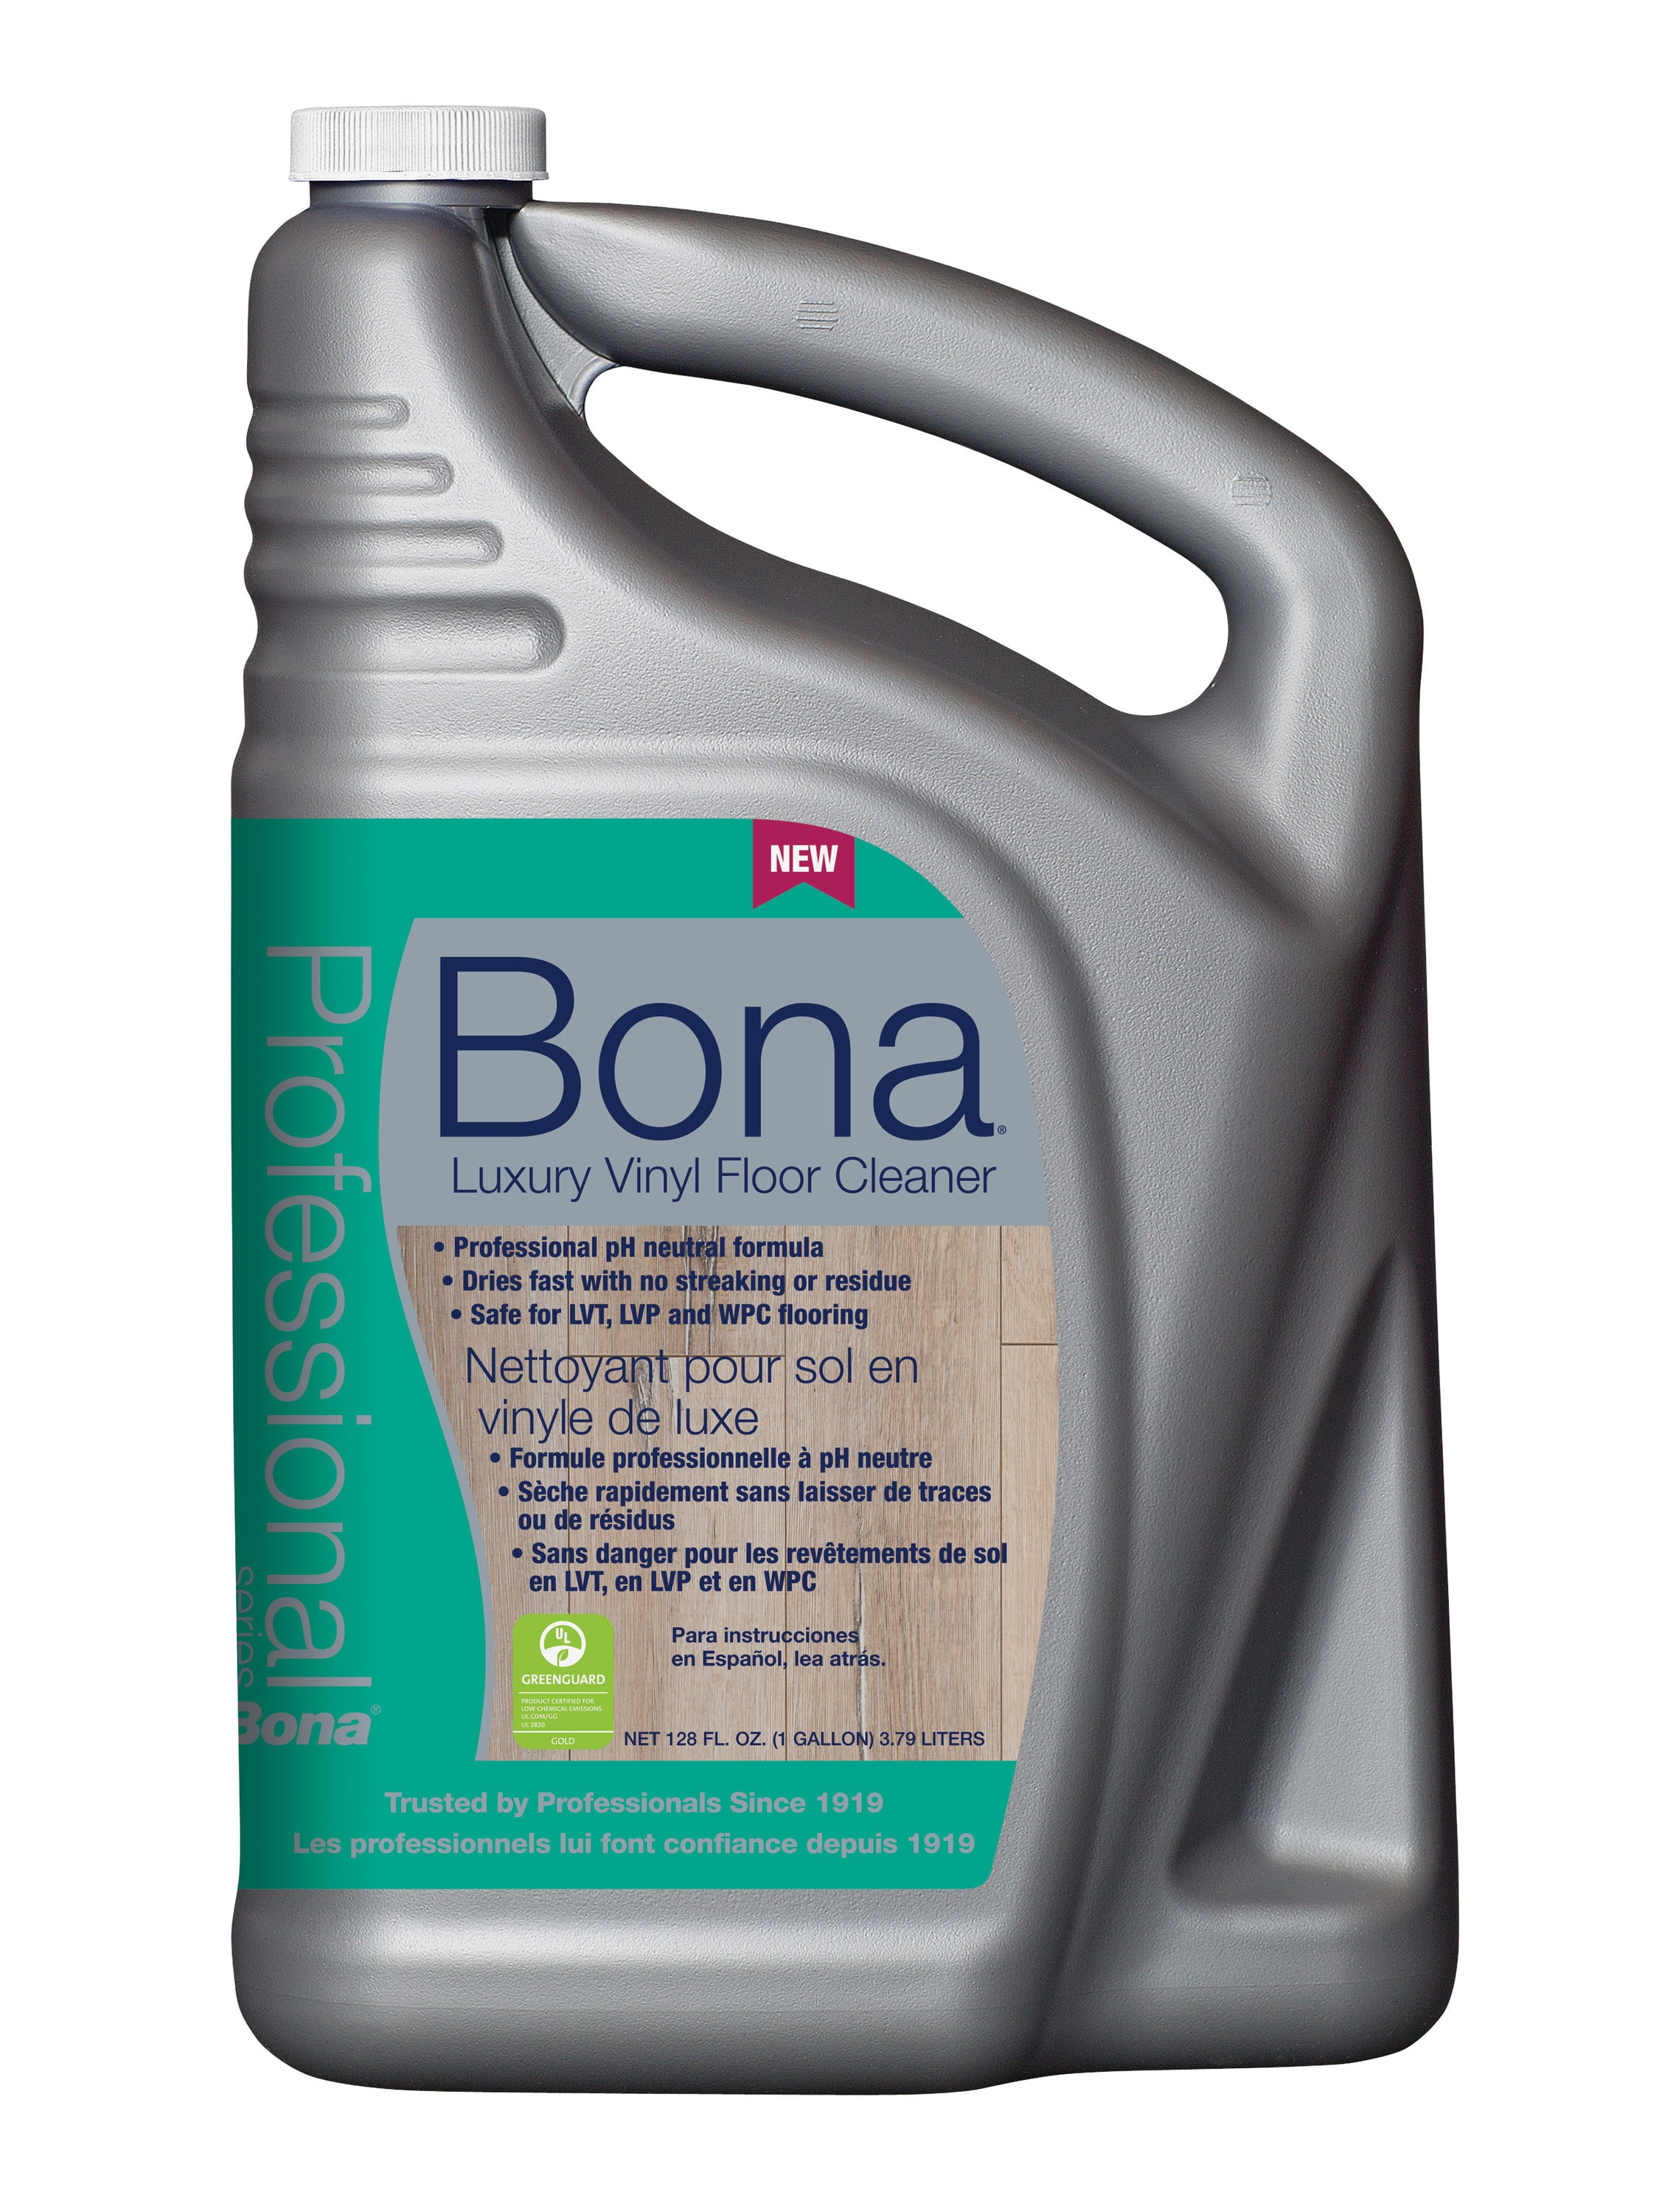 Bona Professional 128-fl oz Unscented Liquid Floor Cleaner